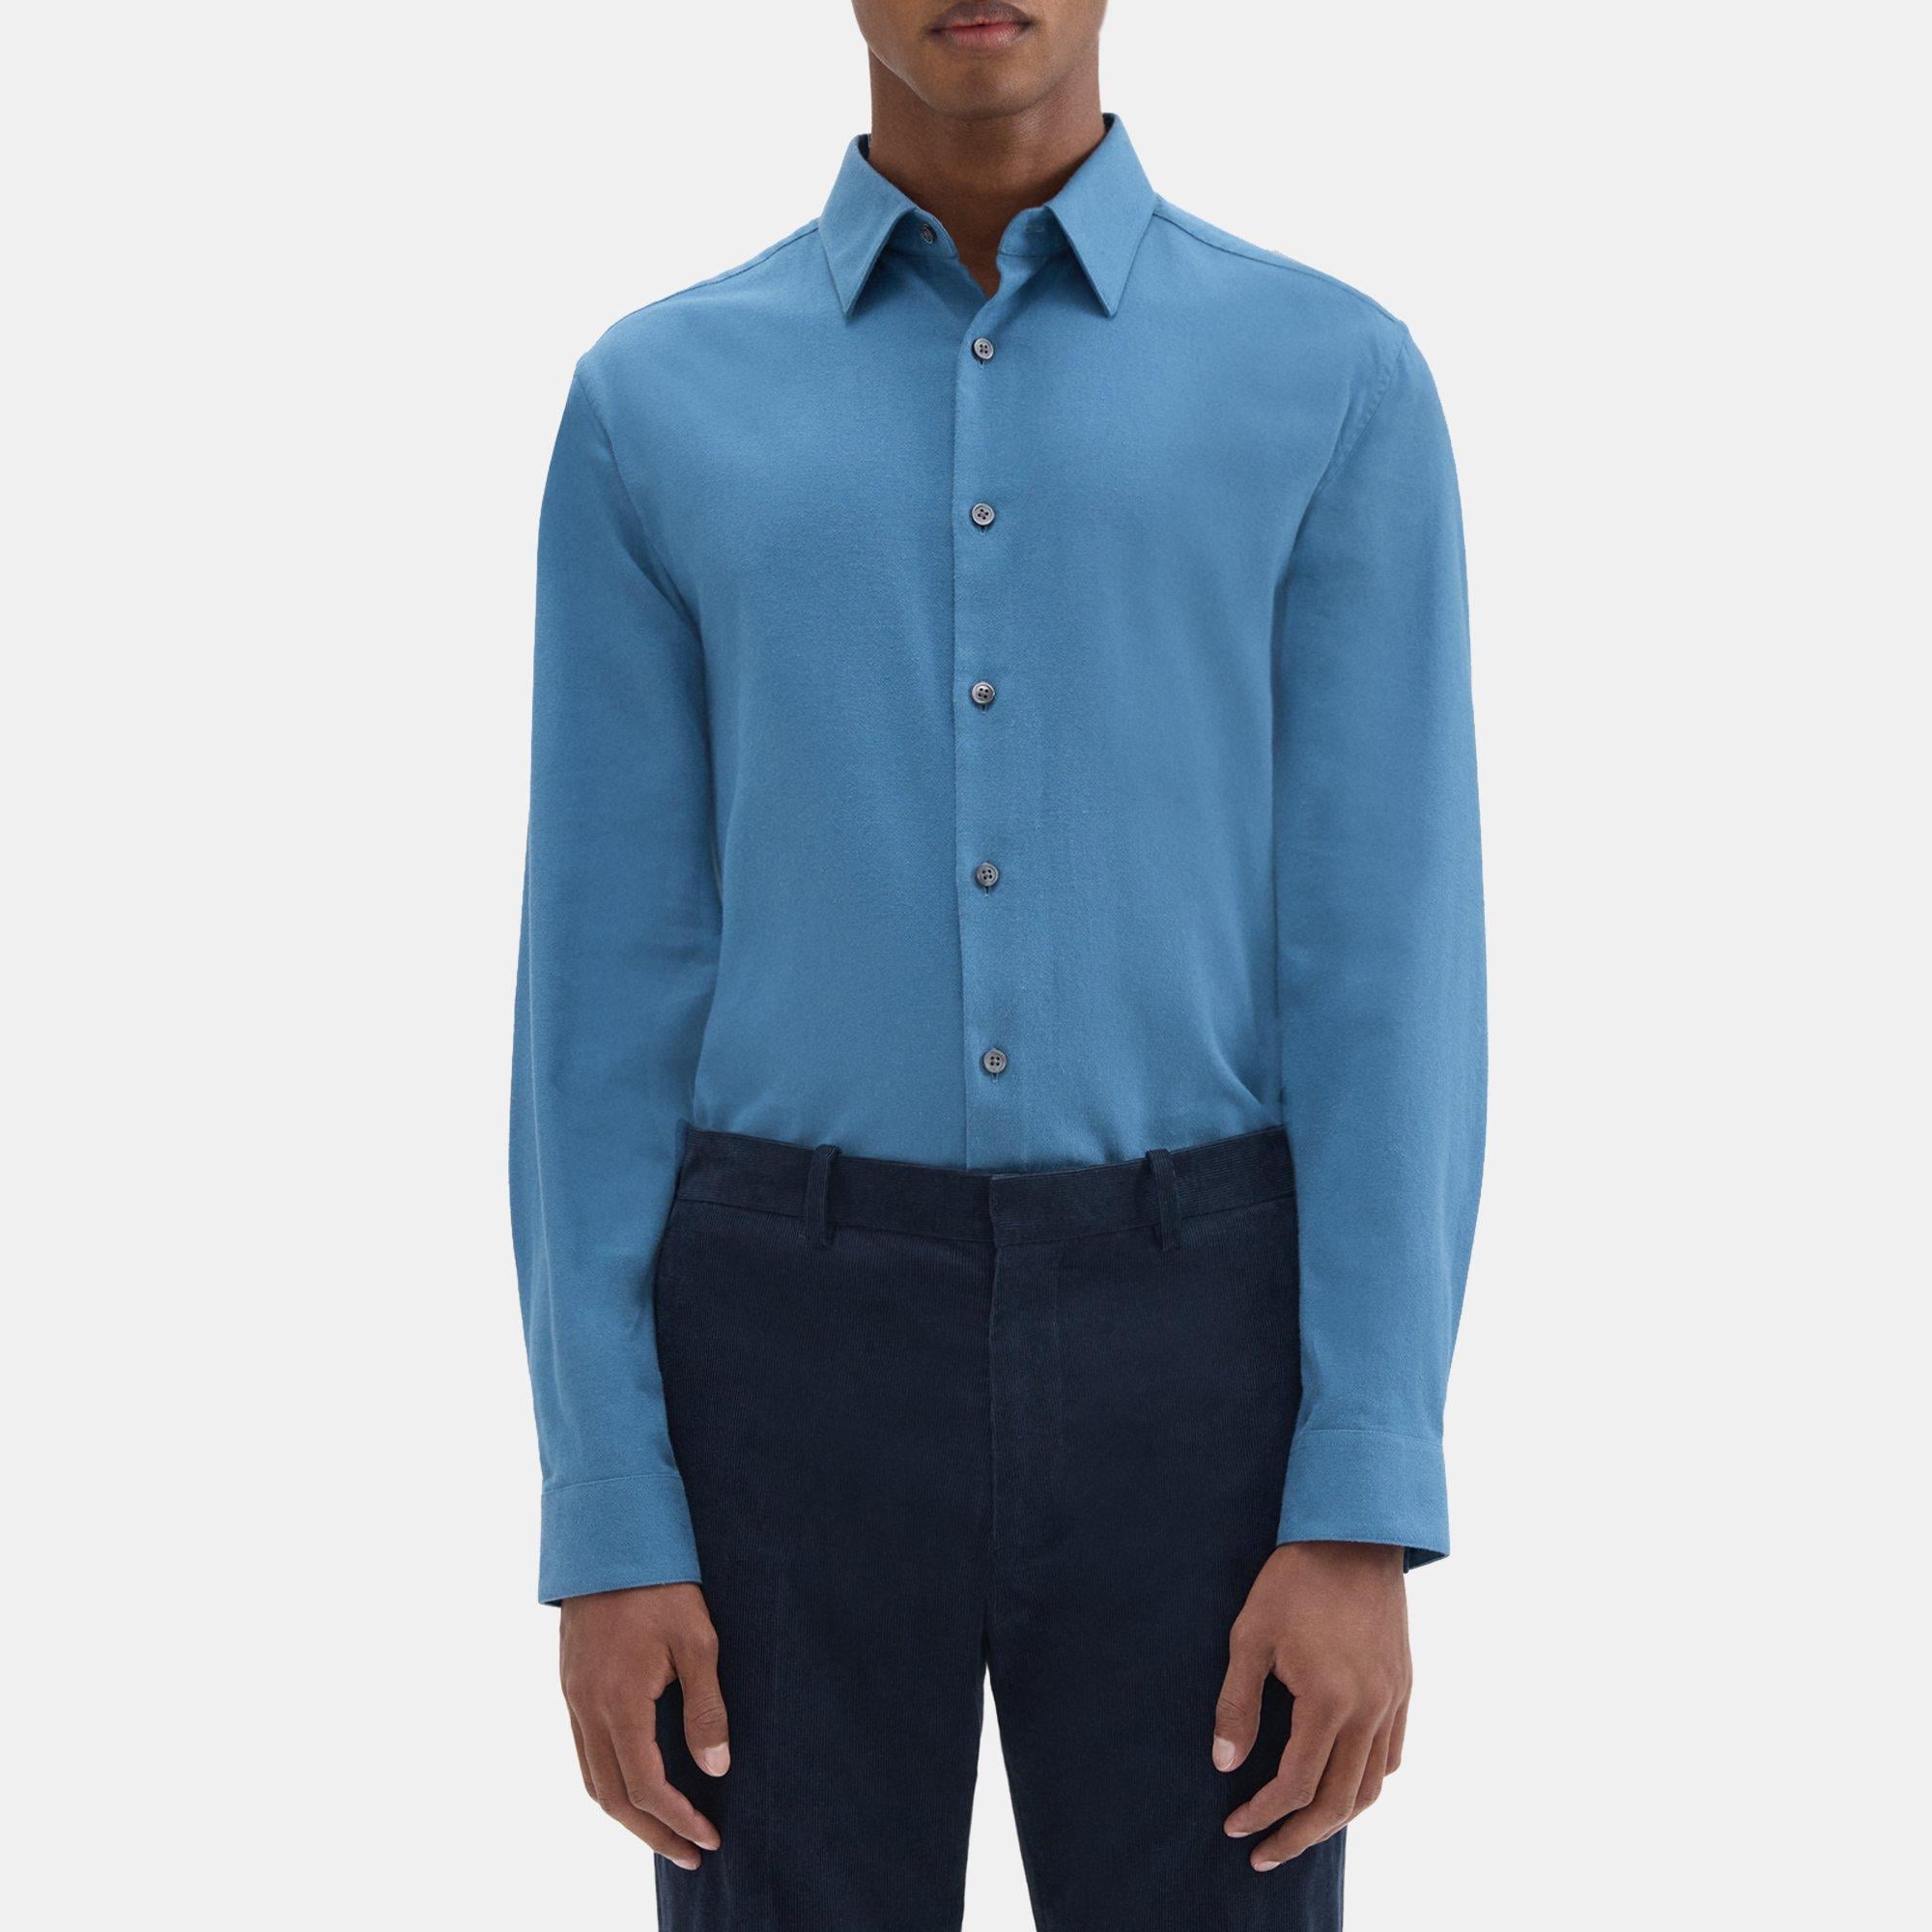 띠어리 Theory Irving Shirt in Cotton Flannel,STELLAR